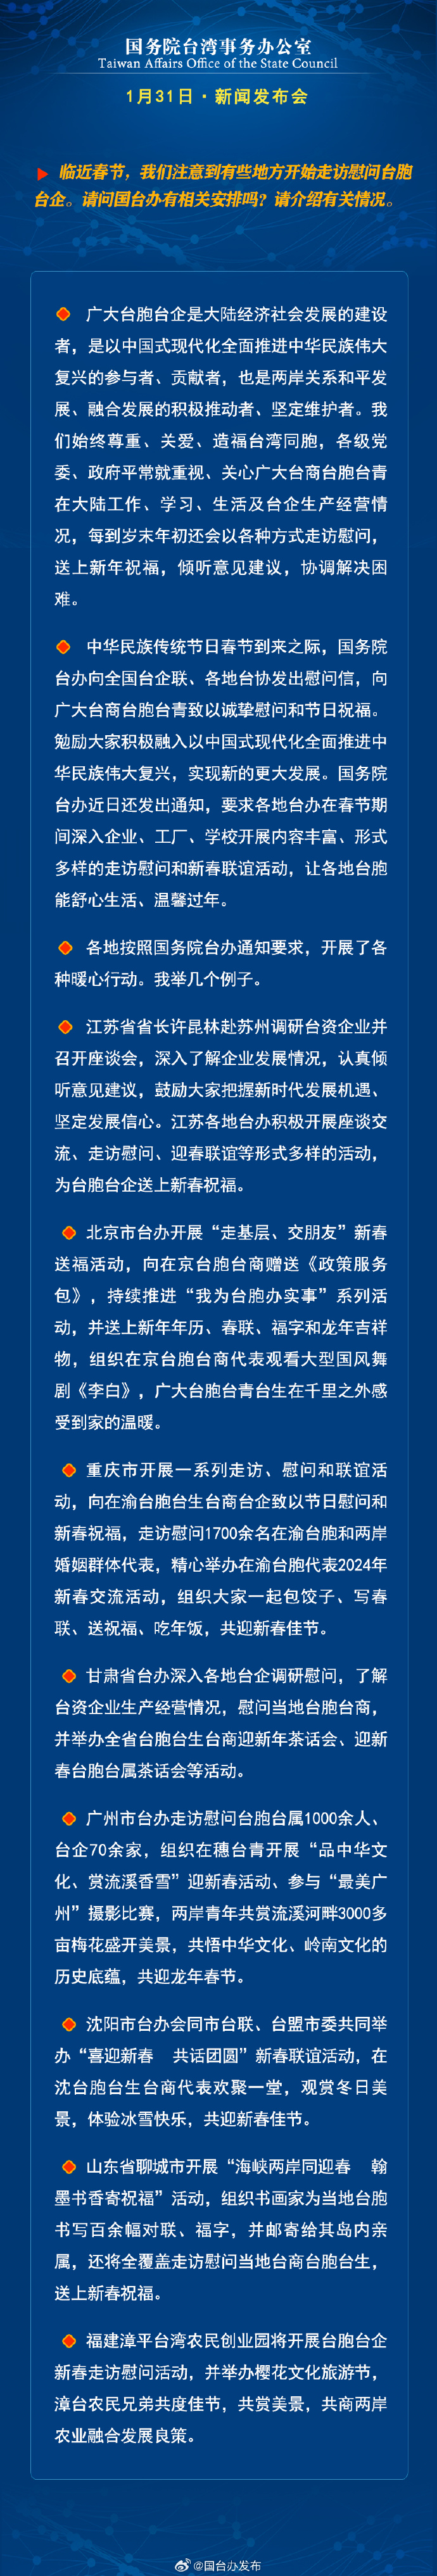 國務院台灣事務辦公室1月31日·新聞發佈會